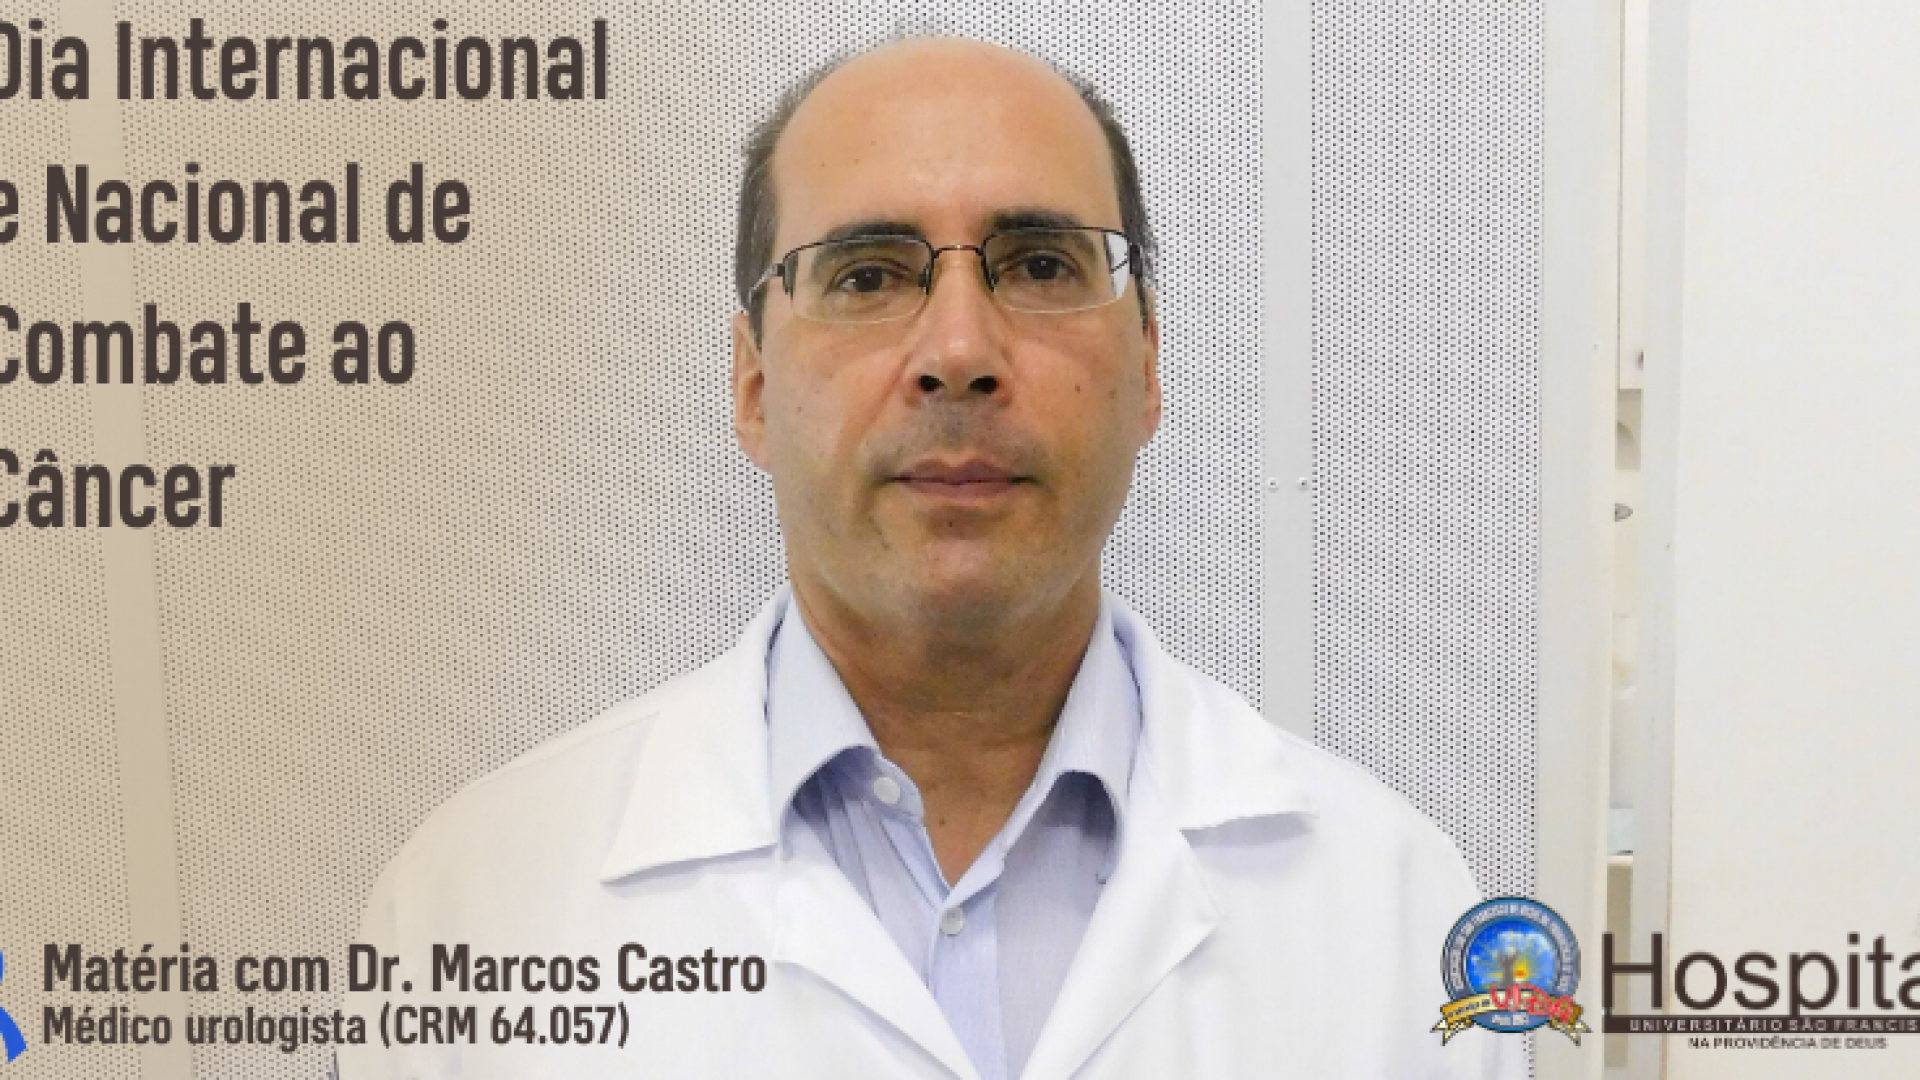 dr_marcos_castro_urologista_husf_braganca